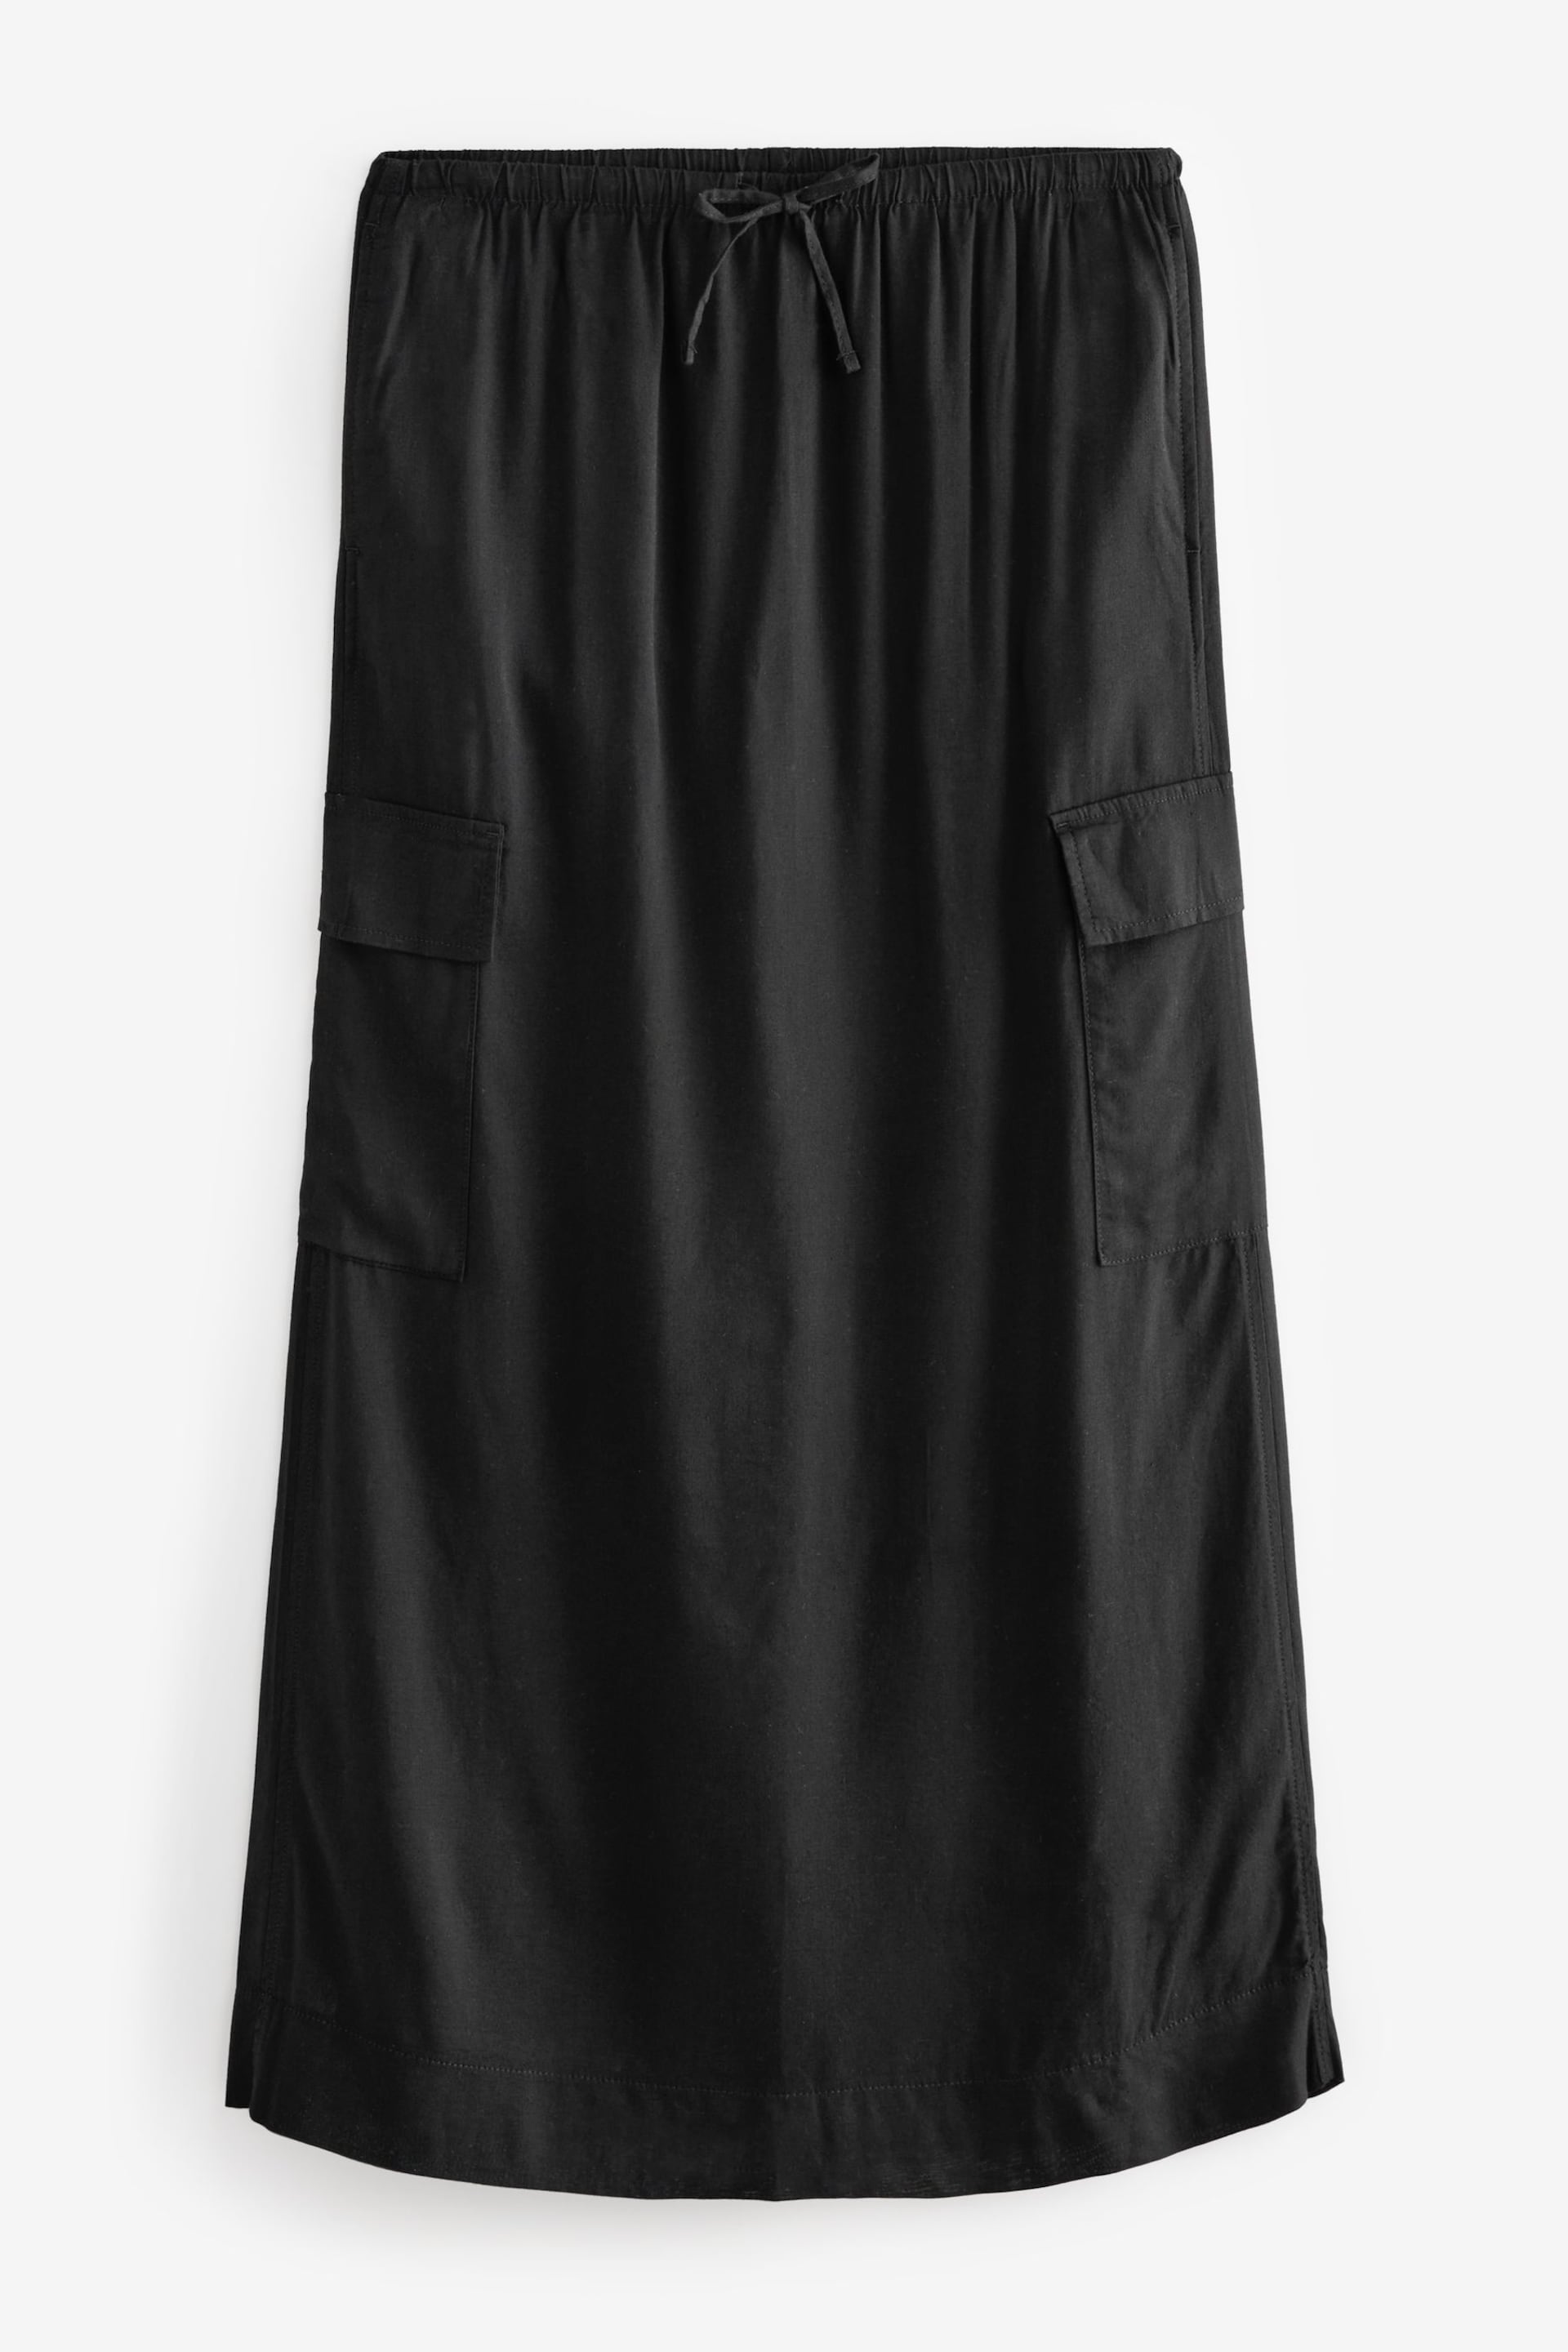 Black Column Midi Skirt with Linen - Image 6 of 7